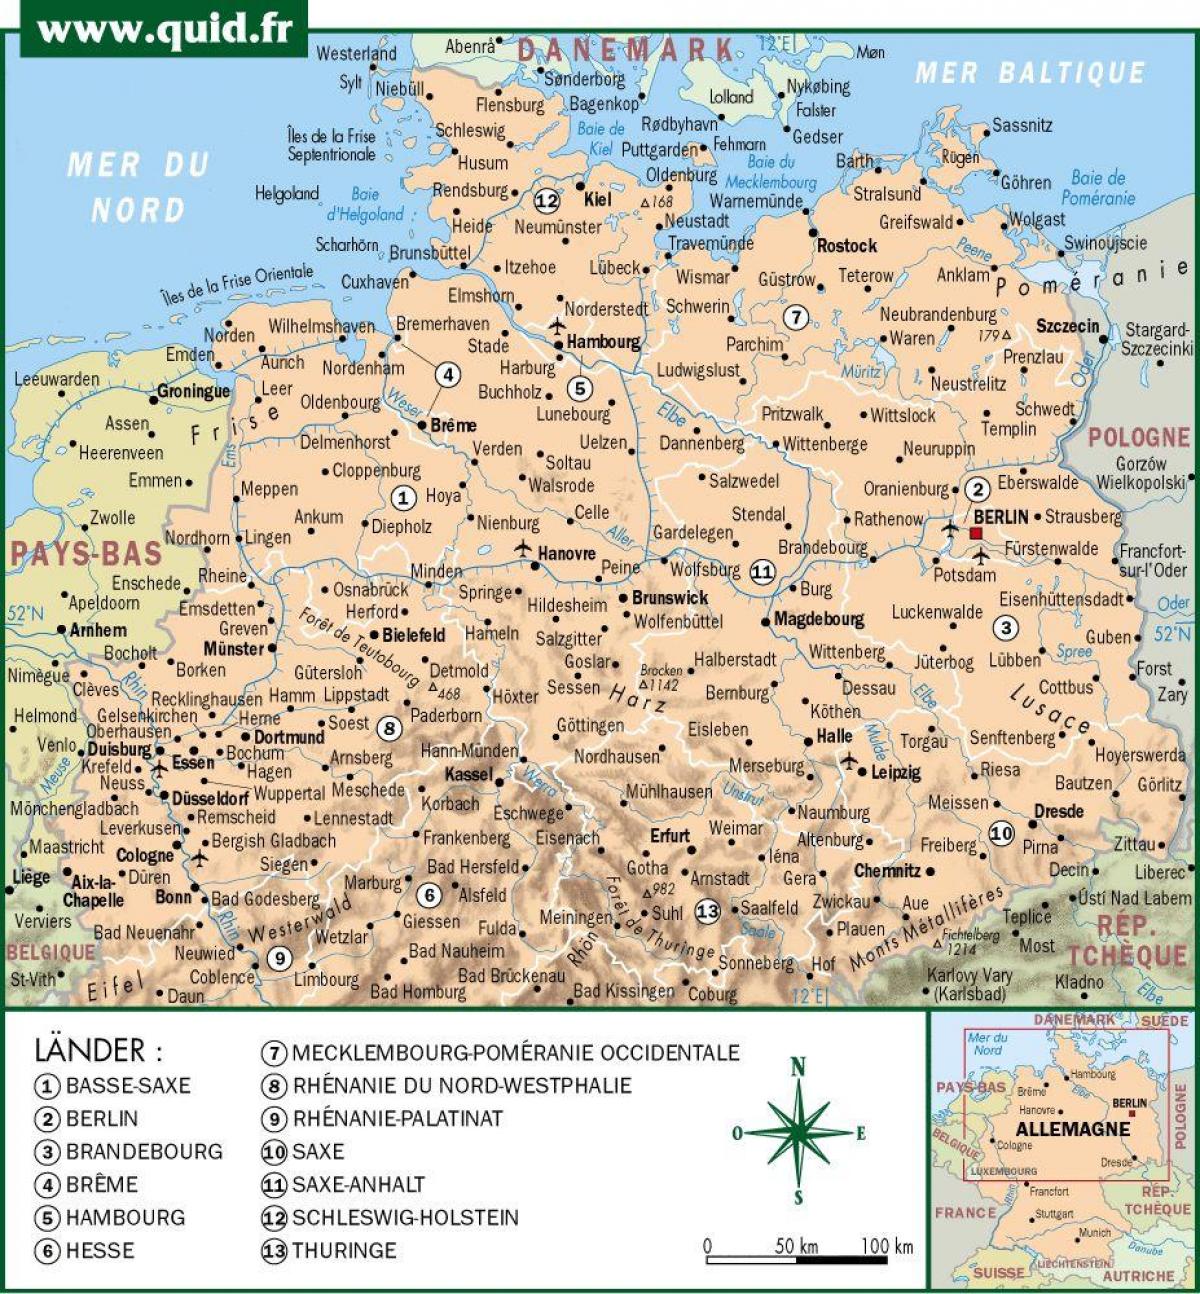 خريطة شمال ألمانيا